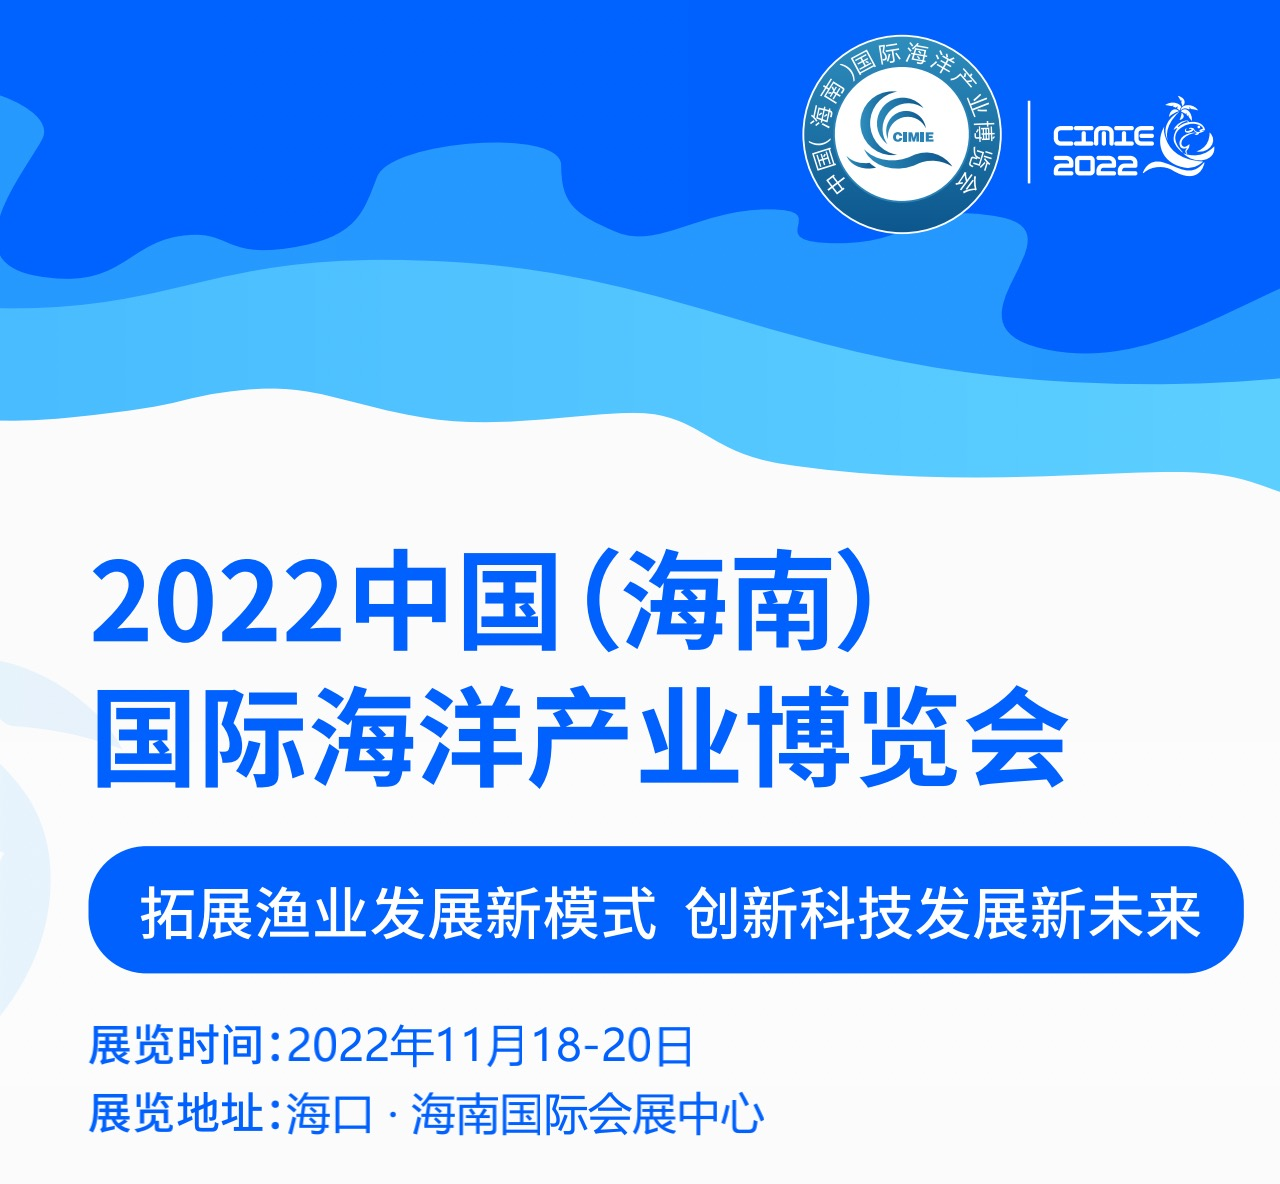 نمایشگاه بین المللی صنایع دریایی چین (هاینان) 2022